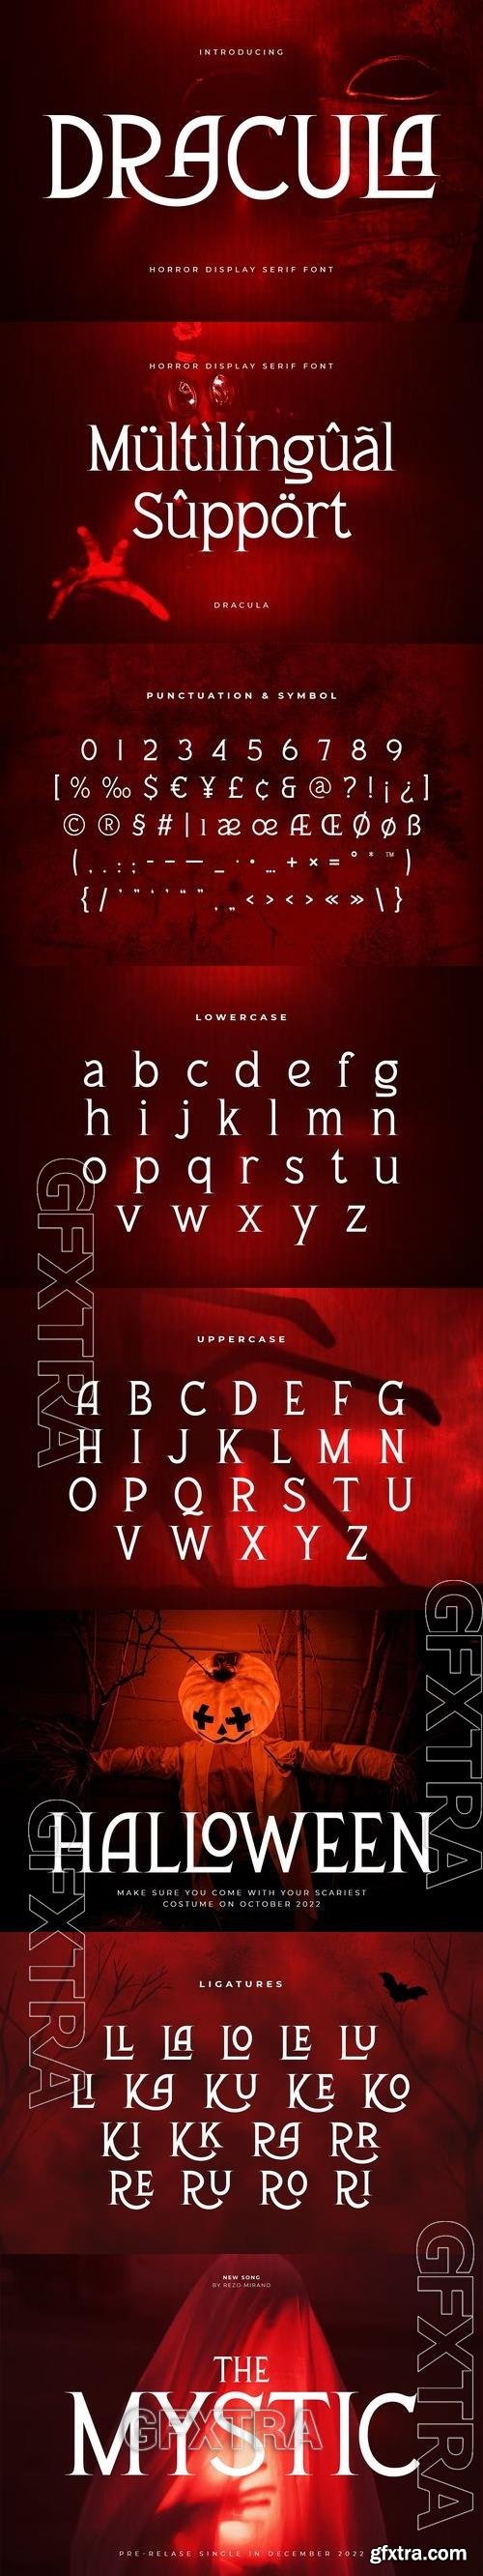 Dracula - Horror Display Serif Font U8KZLTT